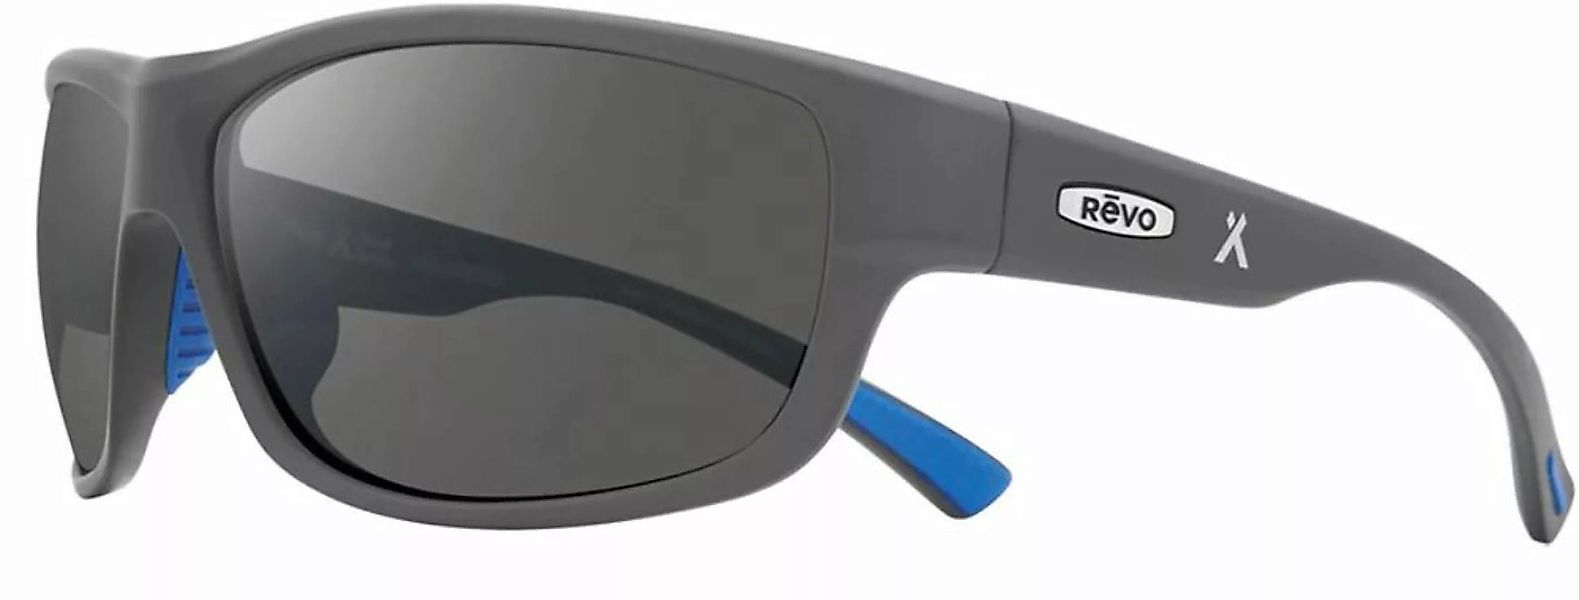 Revo Caper (RE 1092 00 GY) [Matte Light Grey] - Sonnenbrille günstig online kaufen